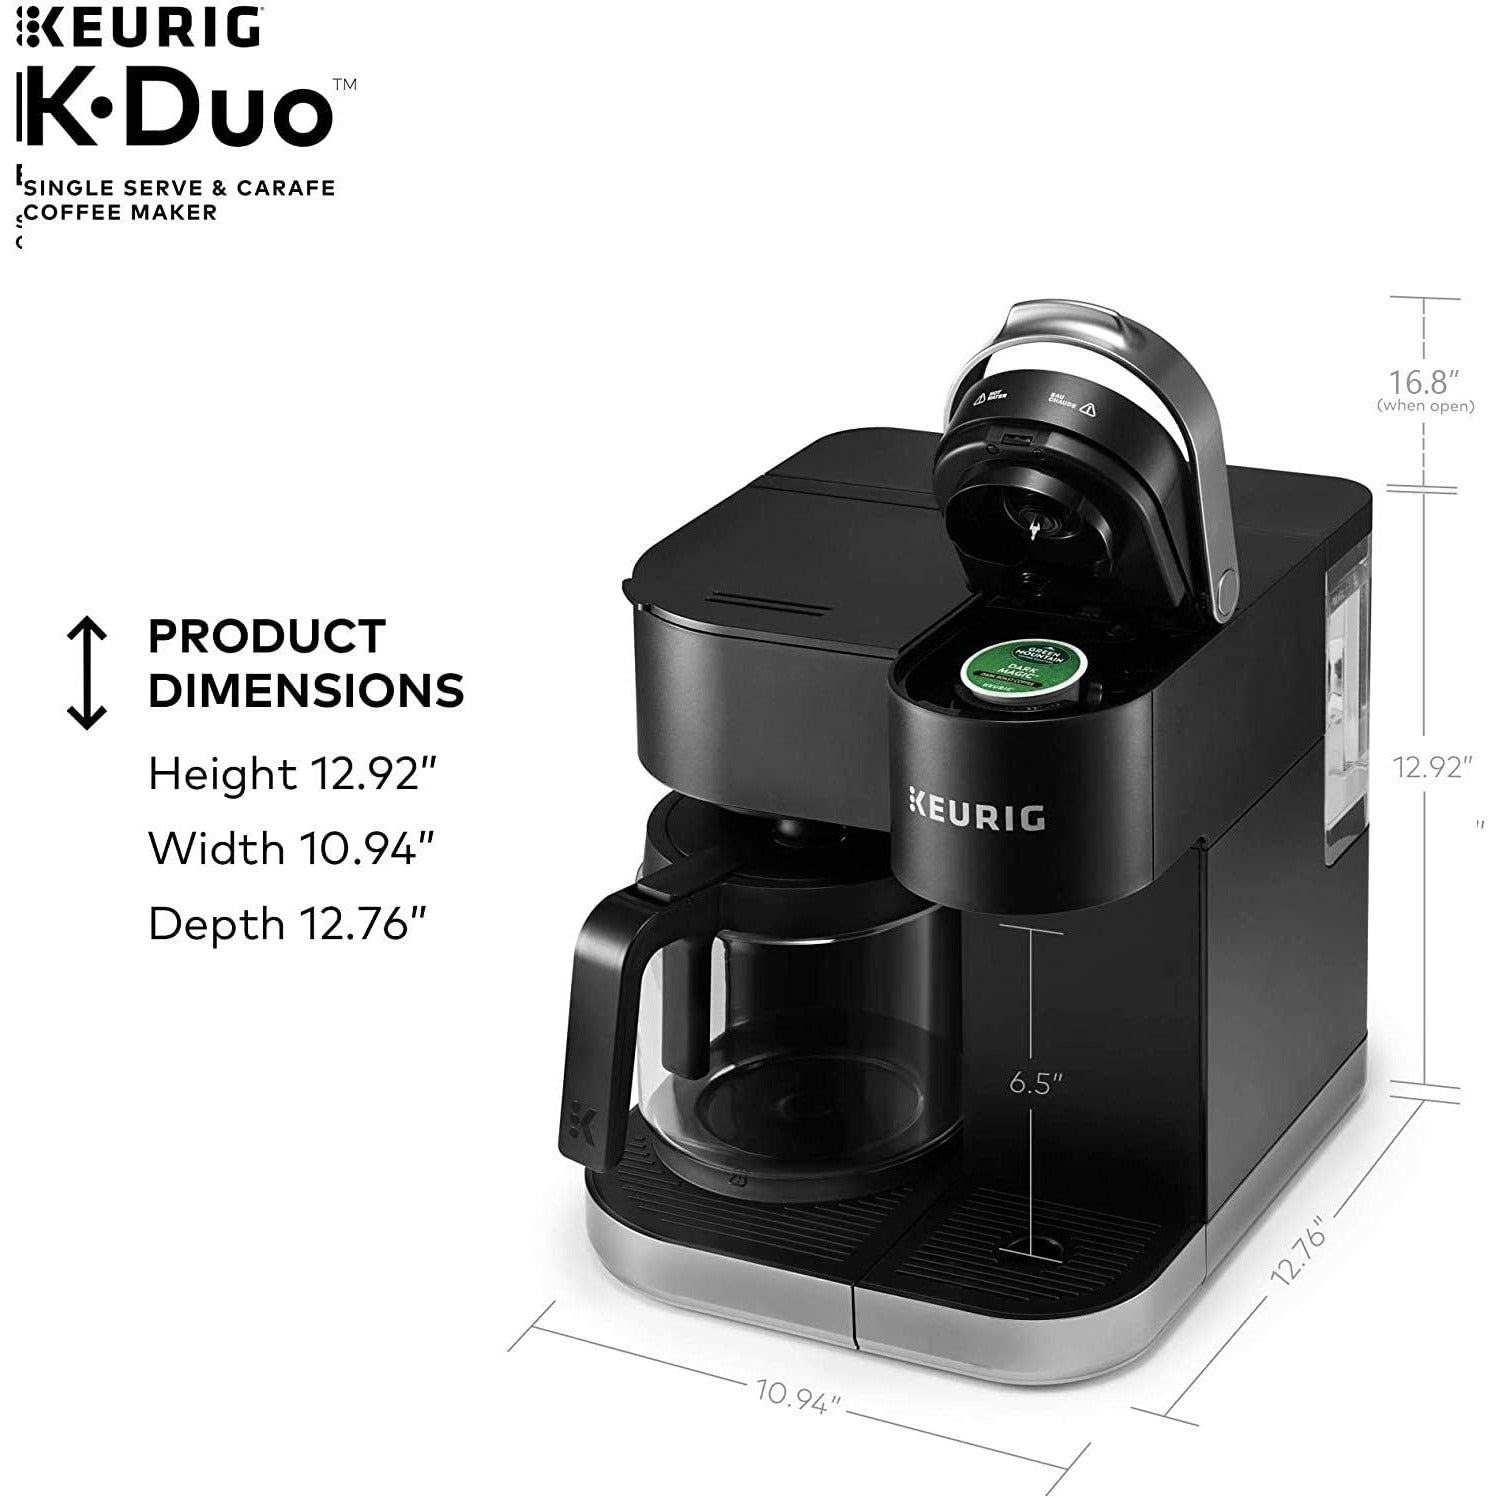 Keurig Duo - Coffee Makers & Espresso Machines - Pleasanton, California, Facebook Marketplace